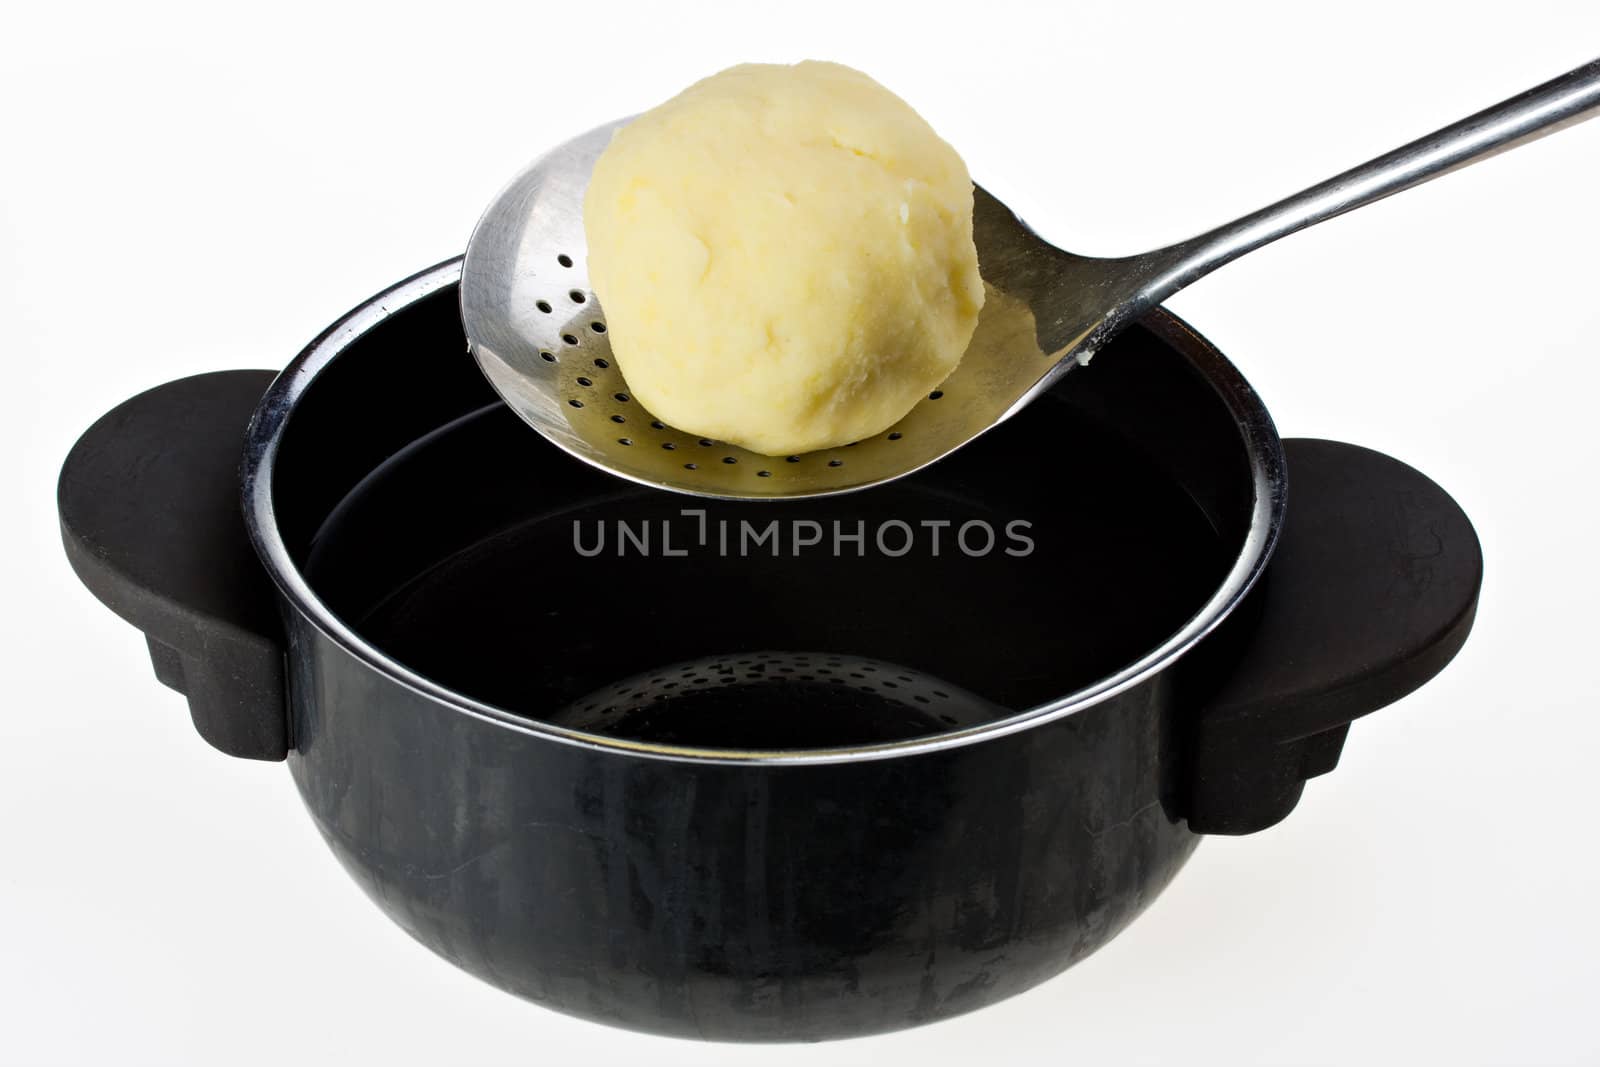 potato dumpling, dipper and cooking pot by bernjuer